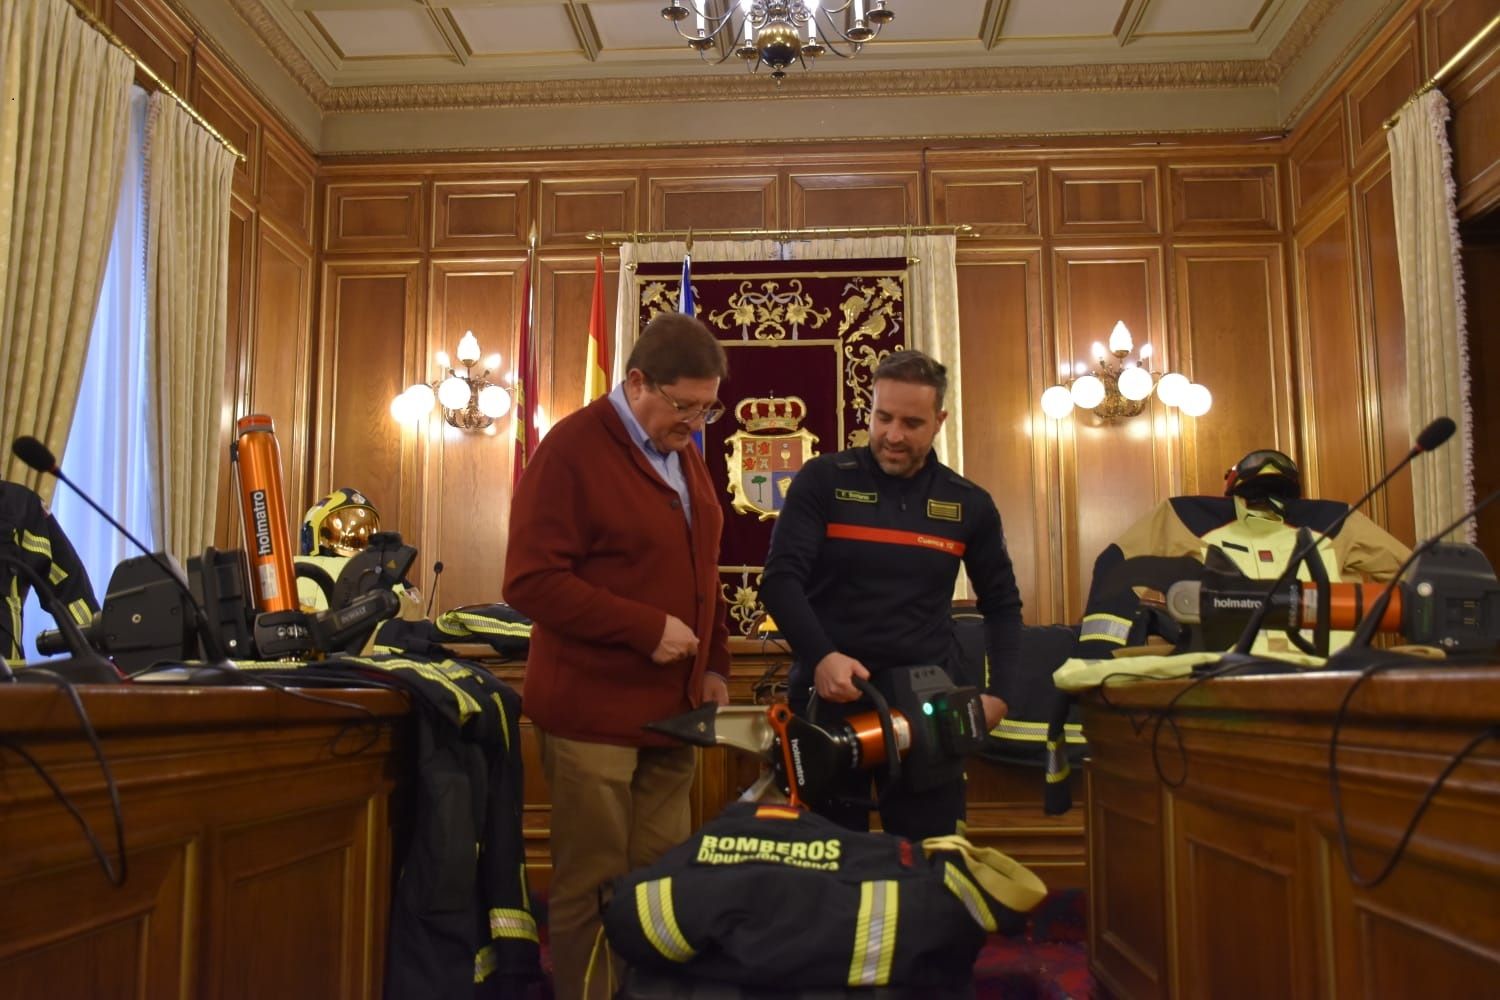 La Diputación de Cuenca invierte 205.000 euros y pone al servicio de bomberos “a la vanguardia” a nivel nacional en equipamiento